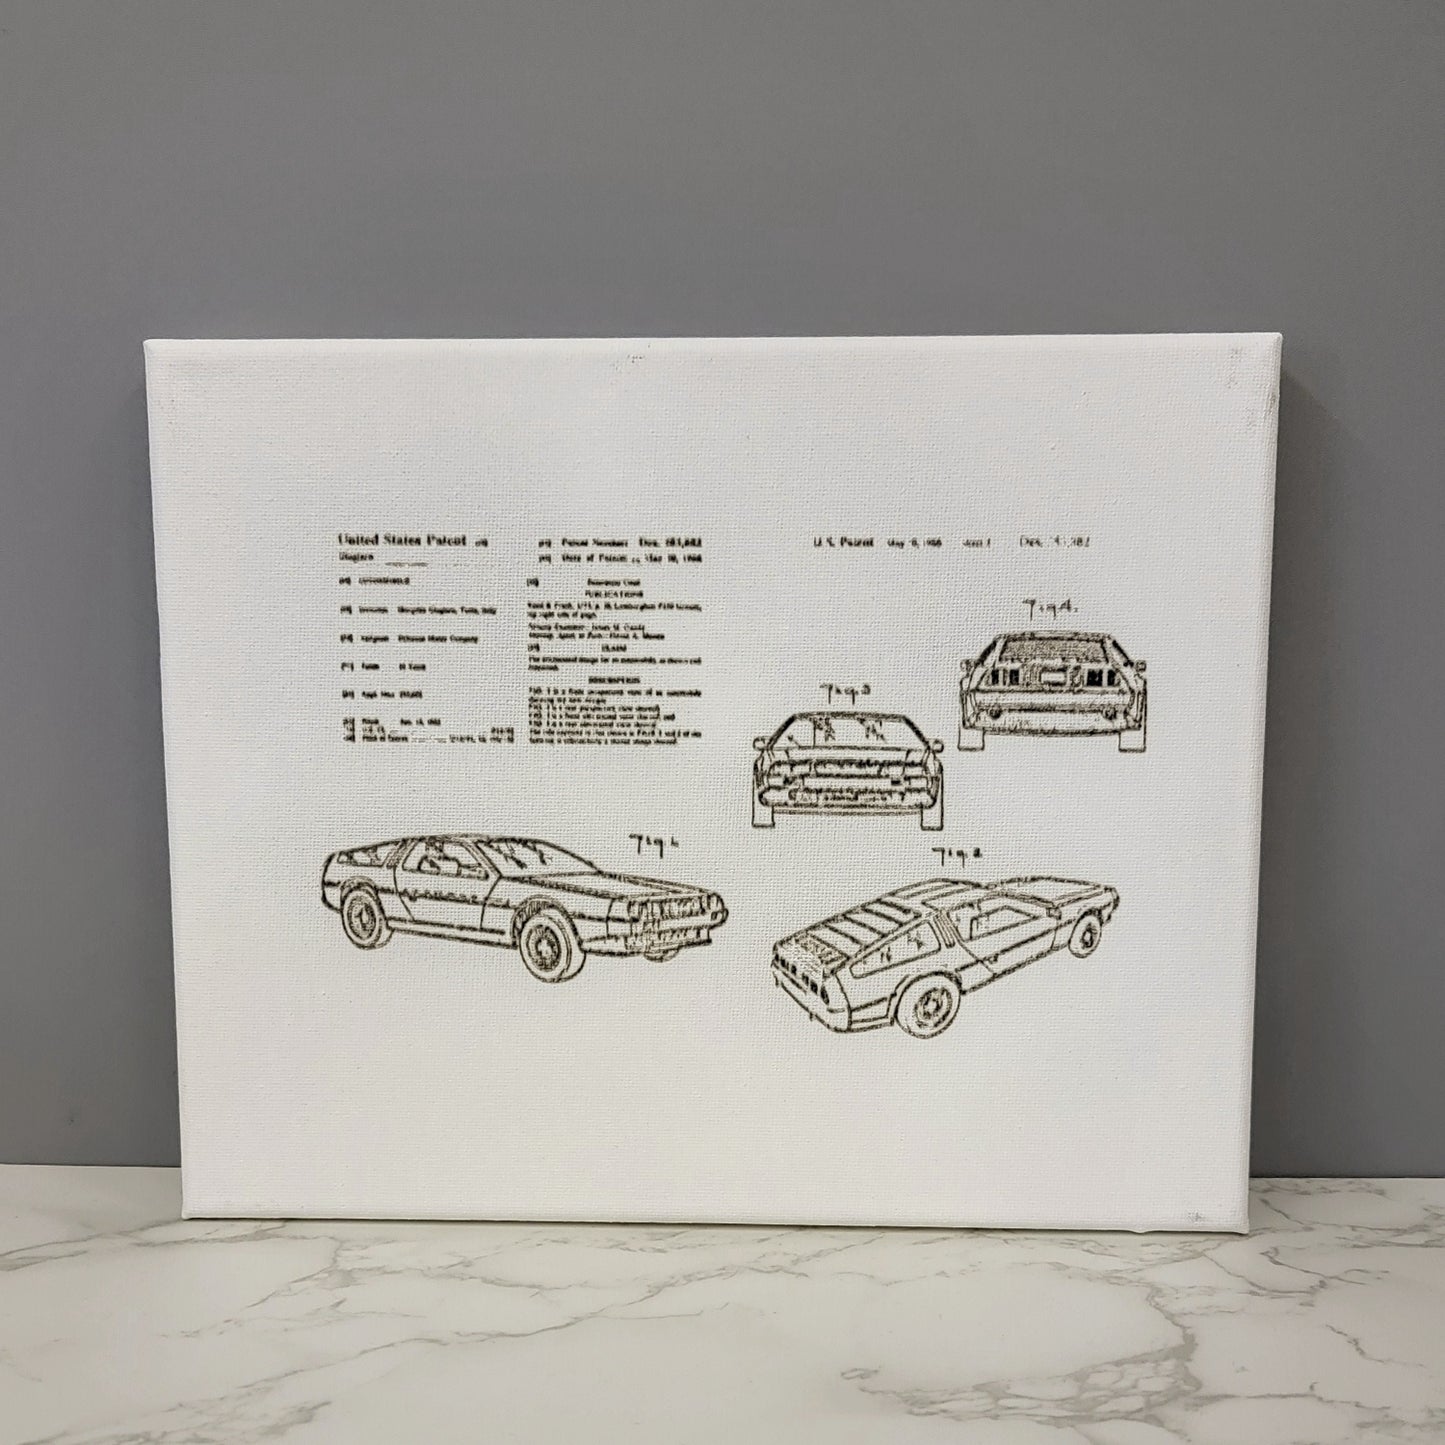 DeLorean Car Gullwing Doors Patent Sketch 10x8 Canvas Wall Art Hanging LA1023